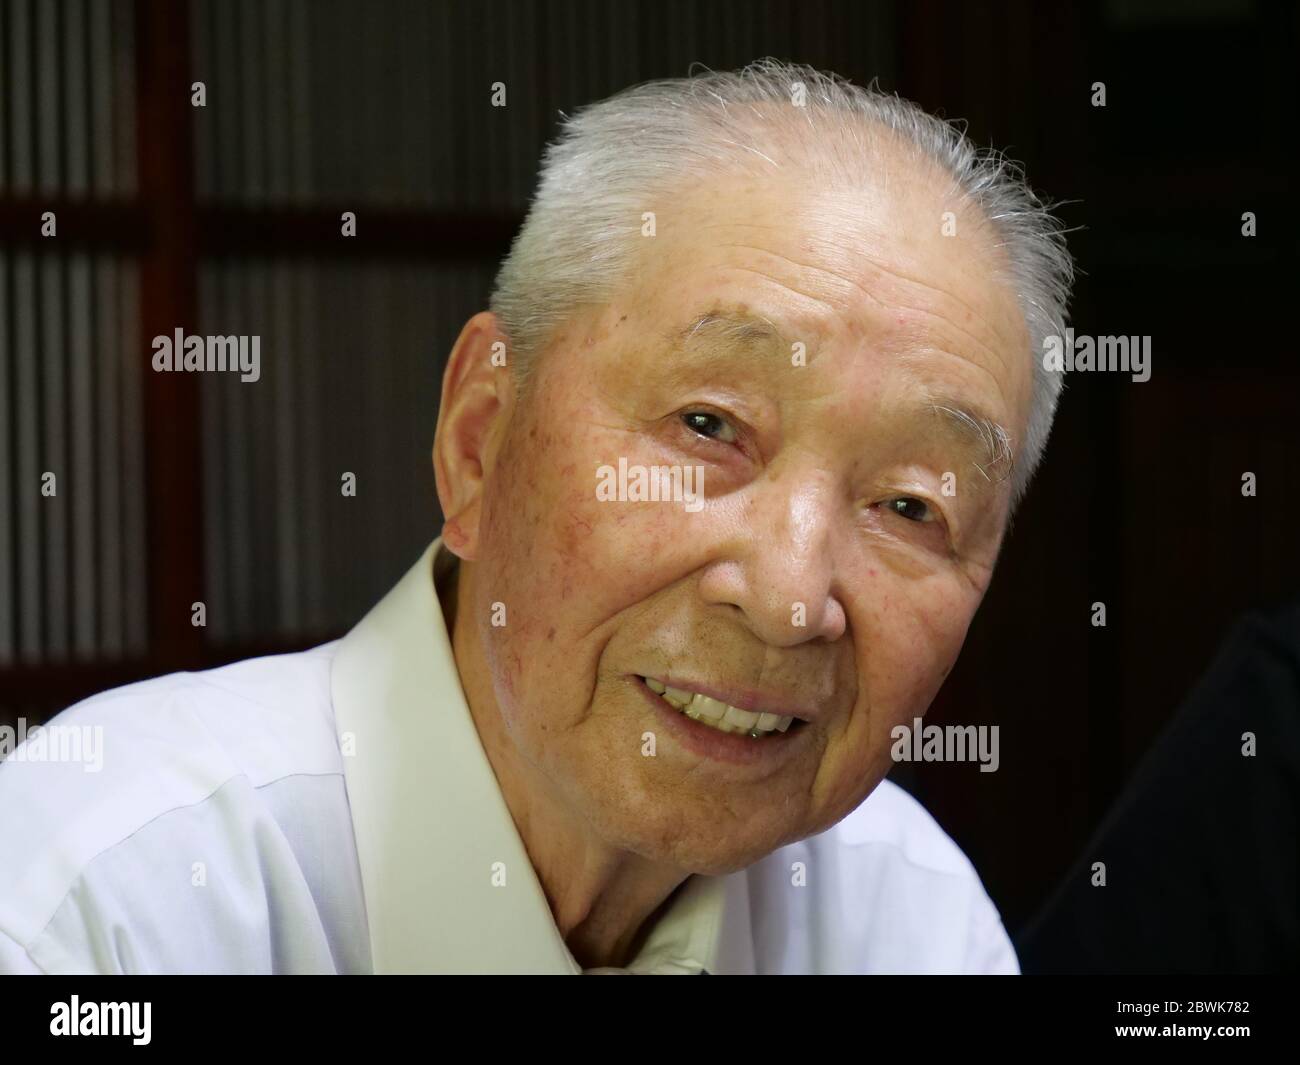 Un ritratto di un anziano asiatico che sorride nella fotocamera. Foto Stock